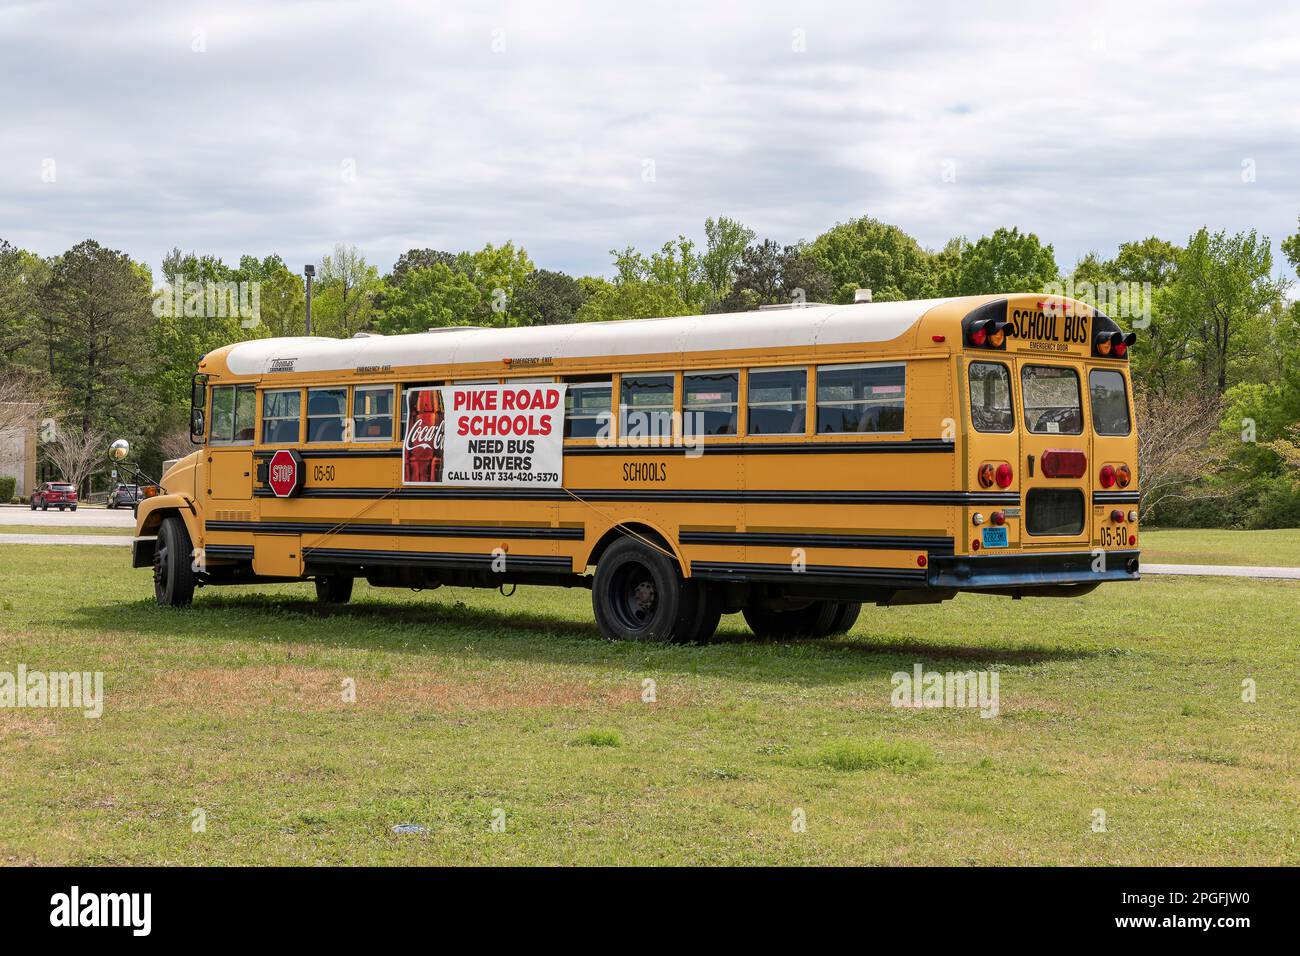 Geparkter Schulbus mit Fahrer gesucht oder Hilfe gesucht Schild an der Seite der Buswerbung für Schulbusfahrer in Pike Road, Alabama, USA. Stockfoto